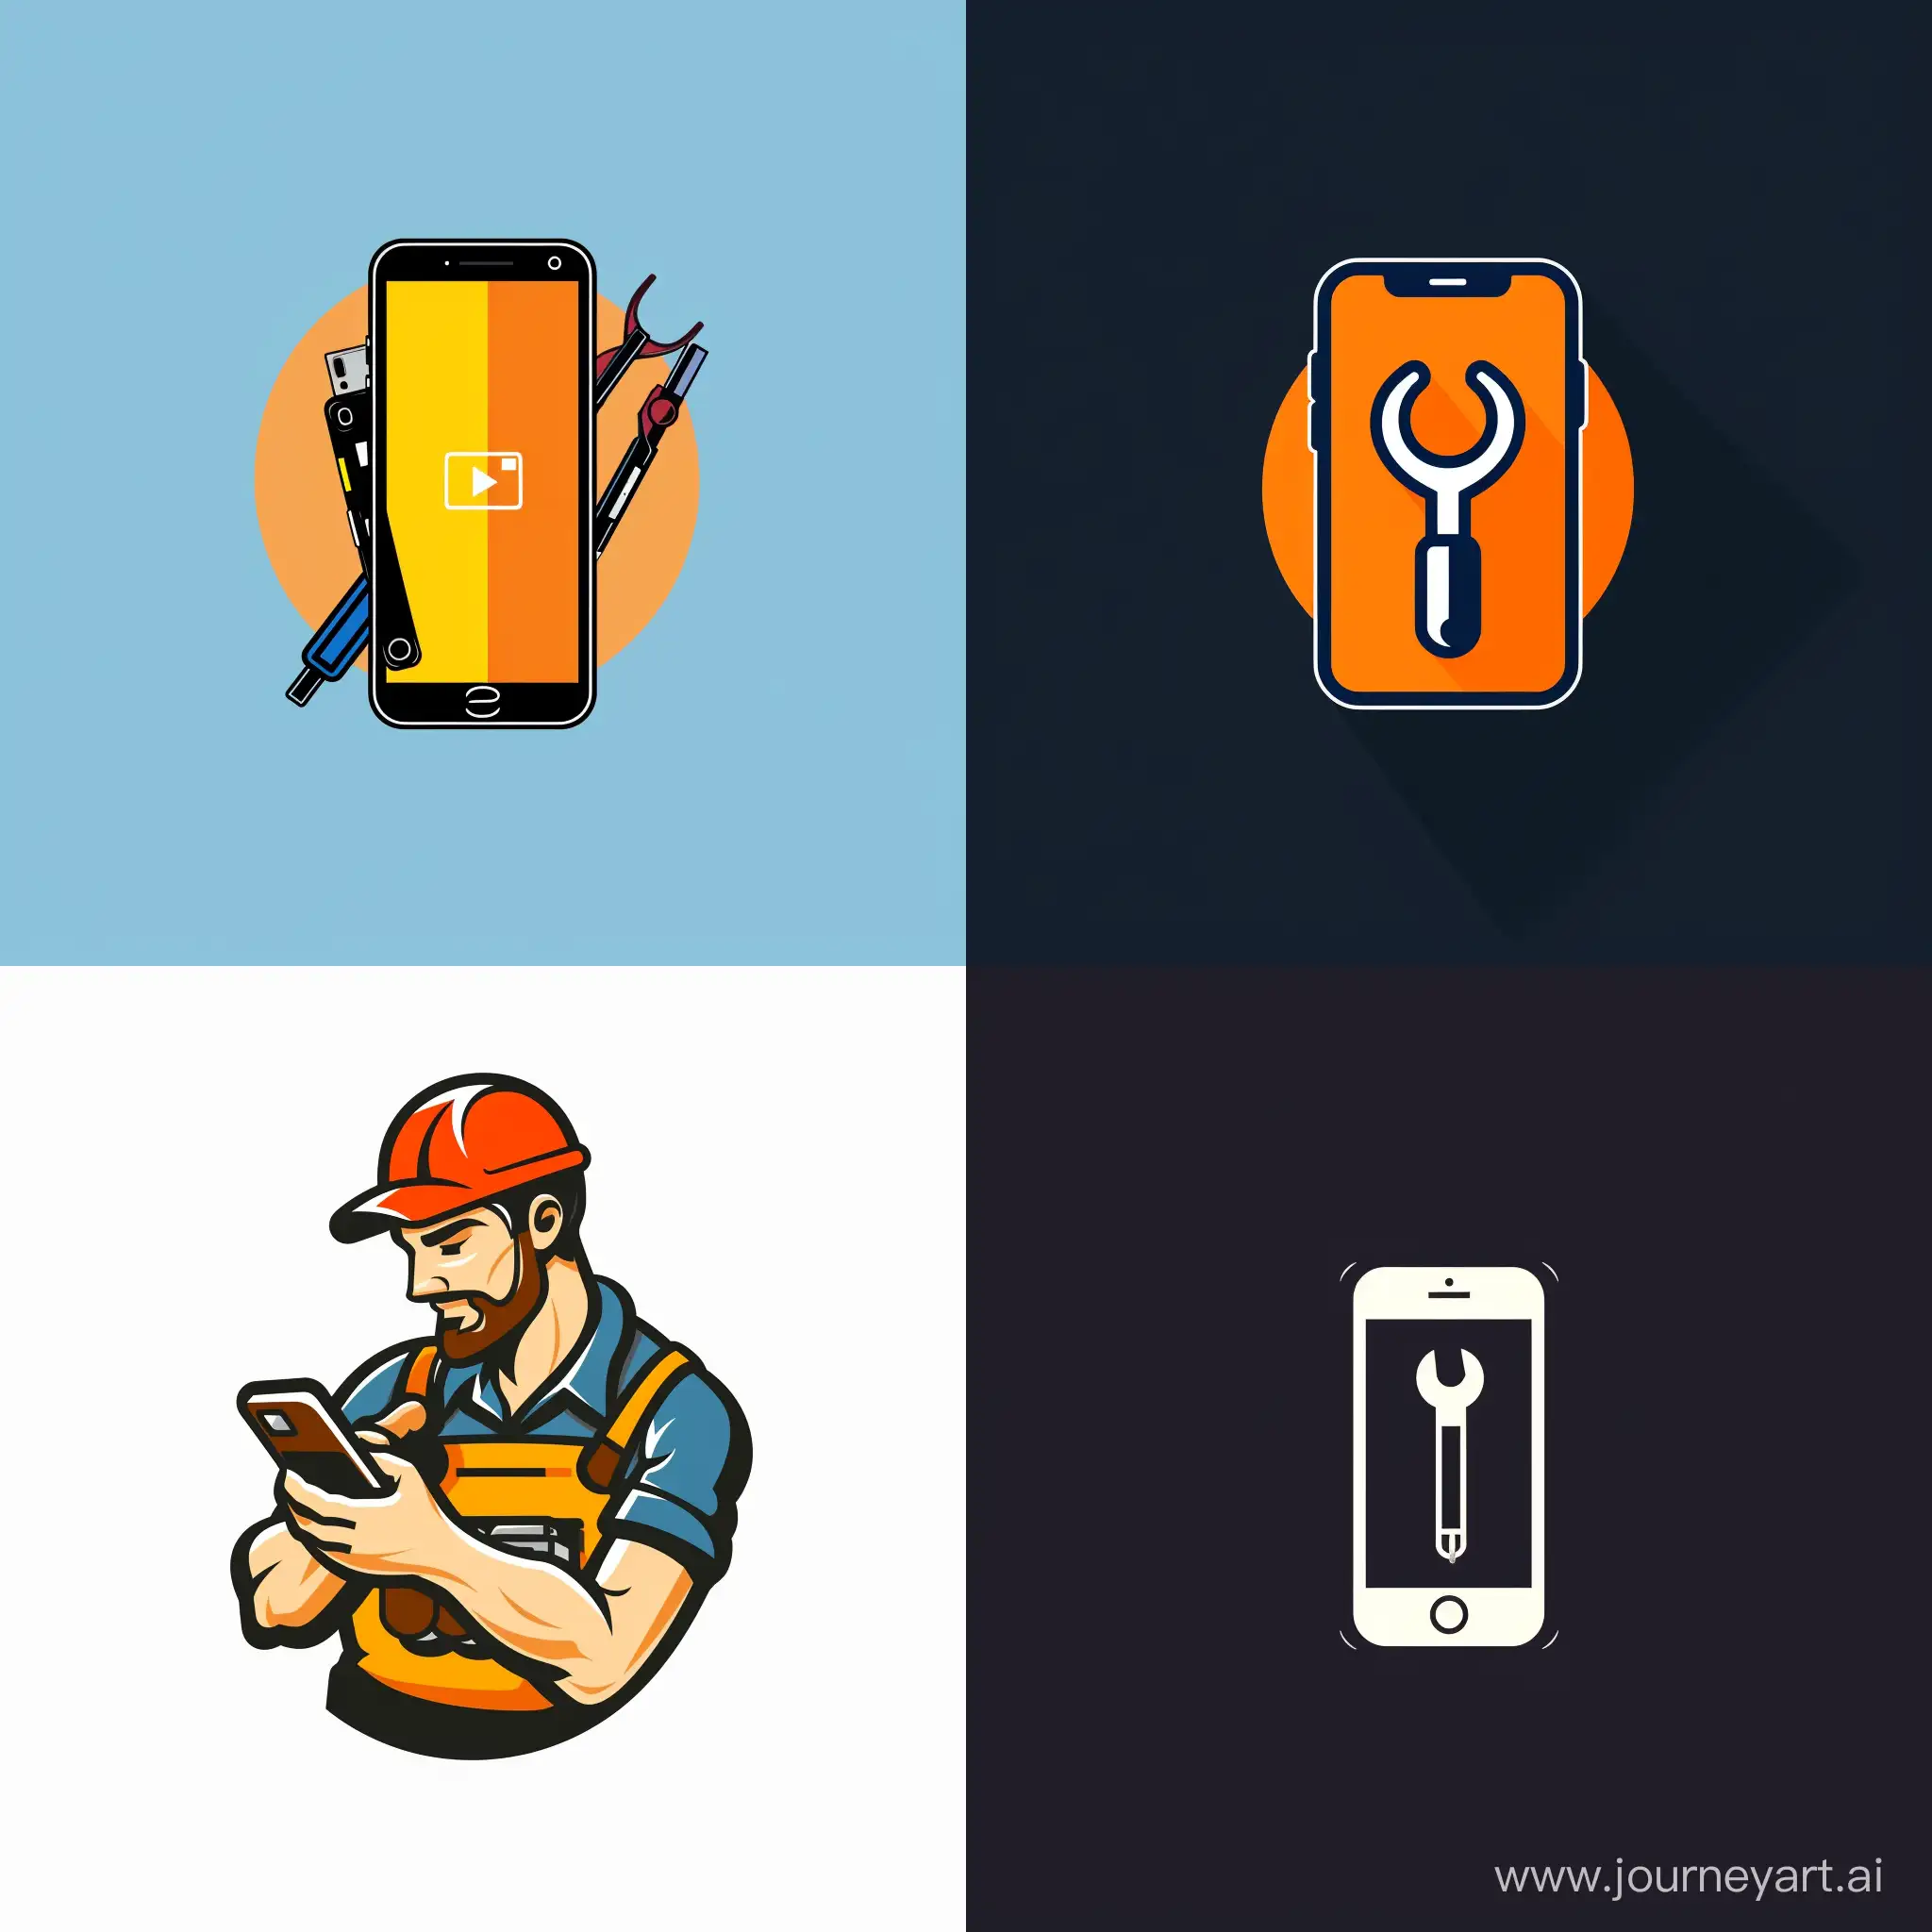 Expert-Mobile-Phone-Repair-Logo-with-Sleek-Design